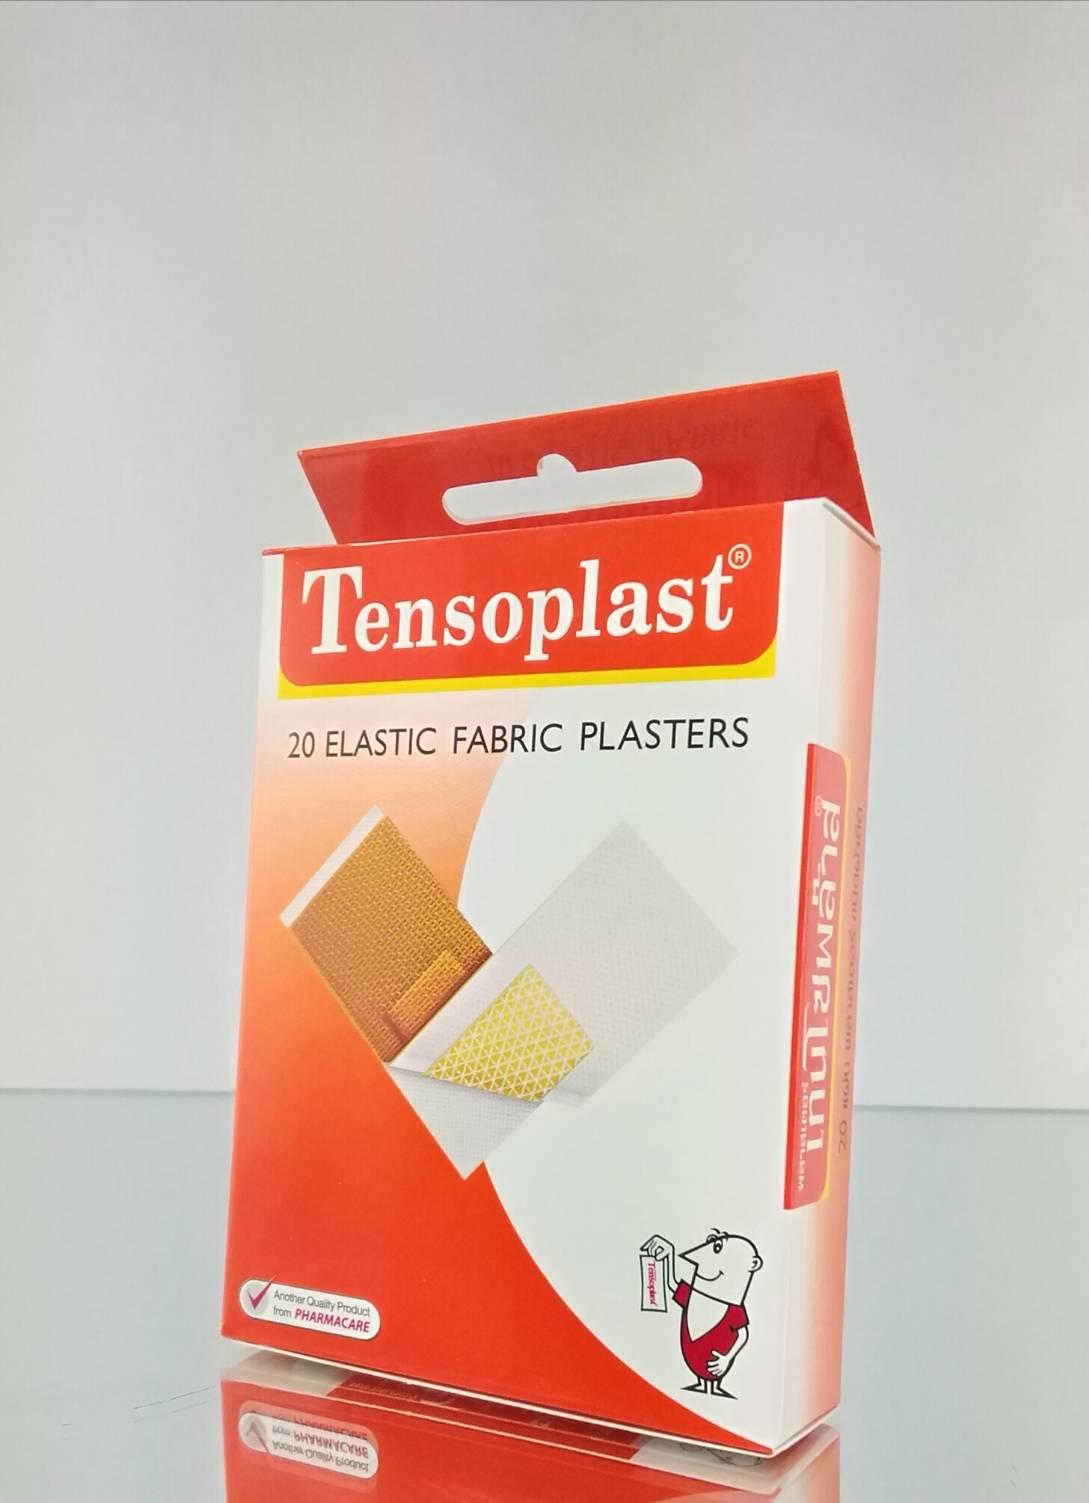 Tensoplast พลาสเตอร์ยา เทนโซพล๊าส (1กล่องบรรจุ20 ชิ้น) ป้องกันเชื้อโรค มีแผ่นใยพิเศษป้องกันไม่ให้ติดแผล